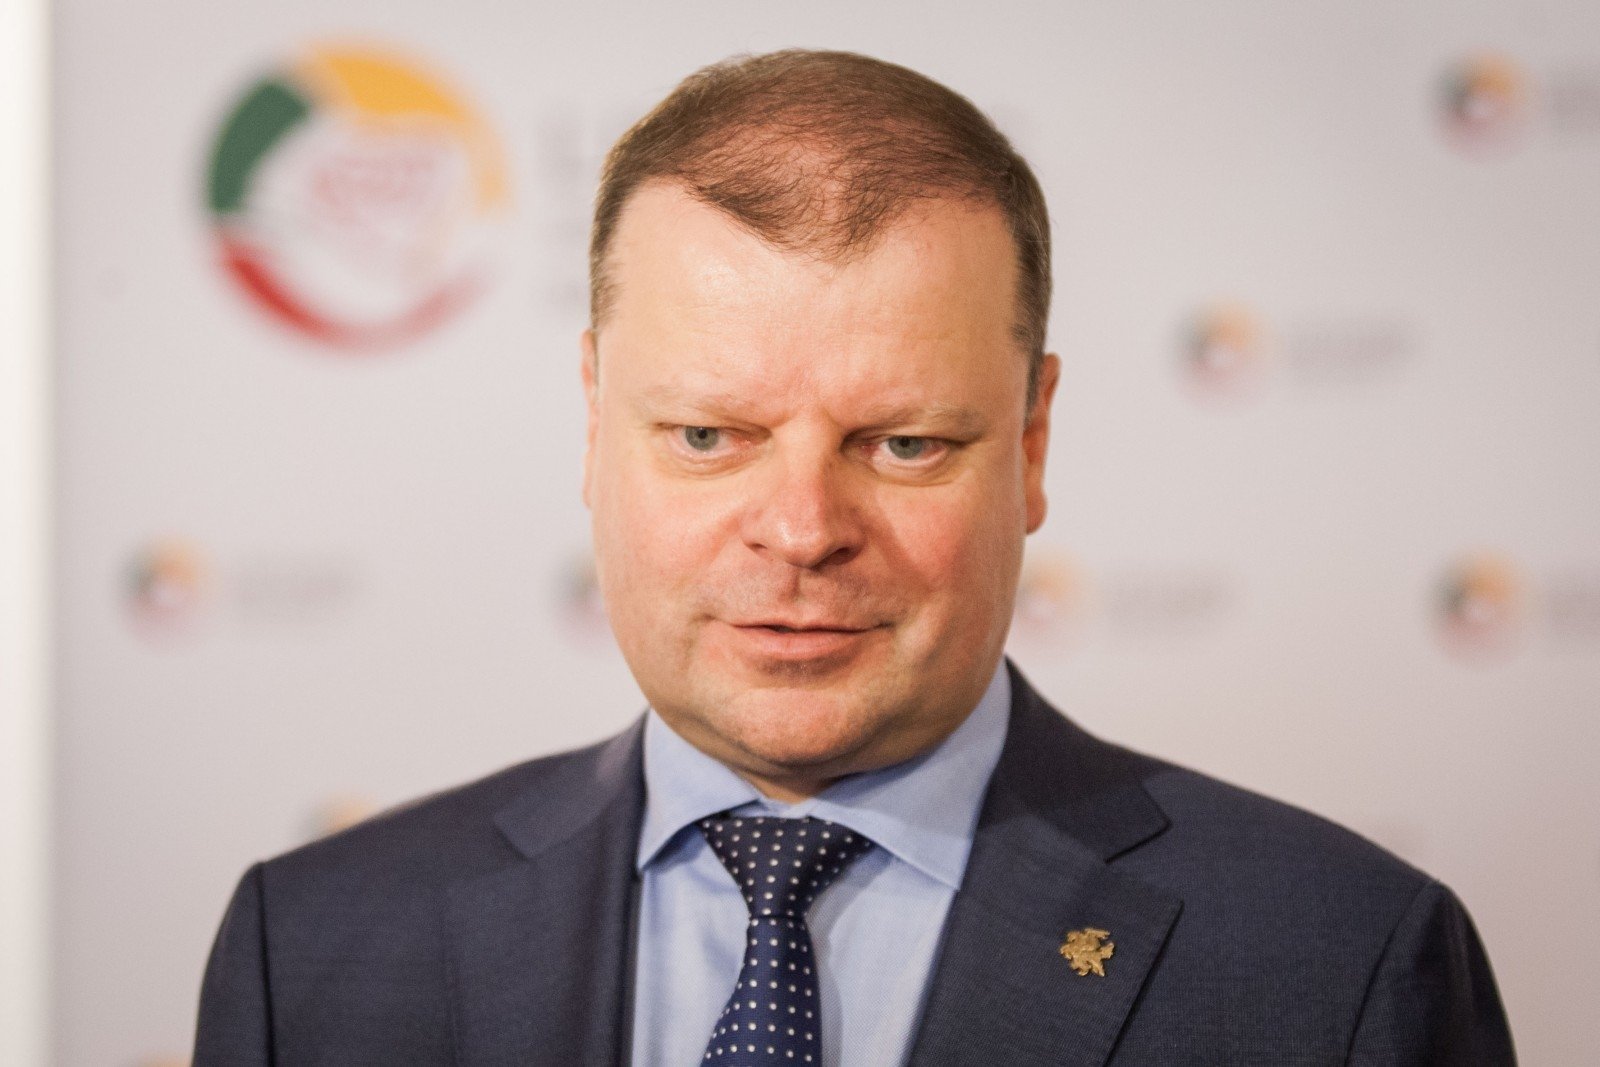  Premierul lituanian Saulius Skvernelis va candida la preşedinţie